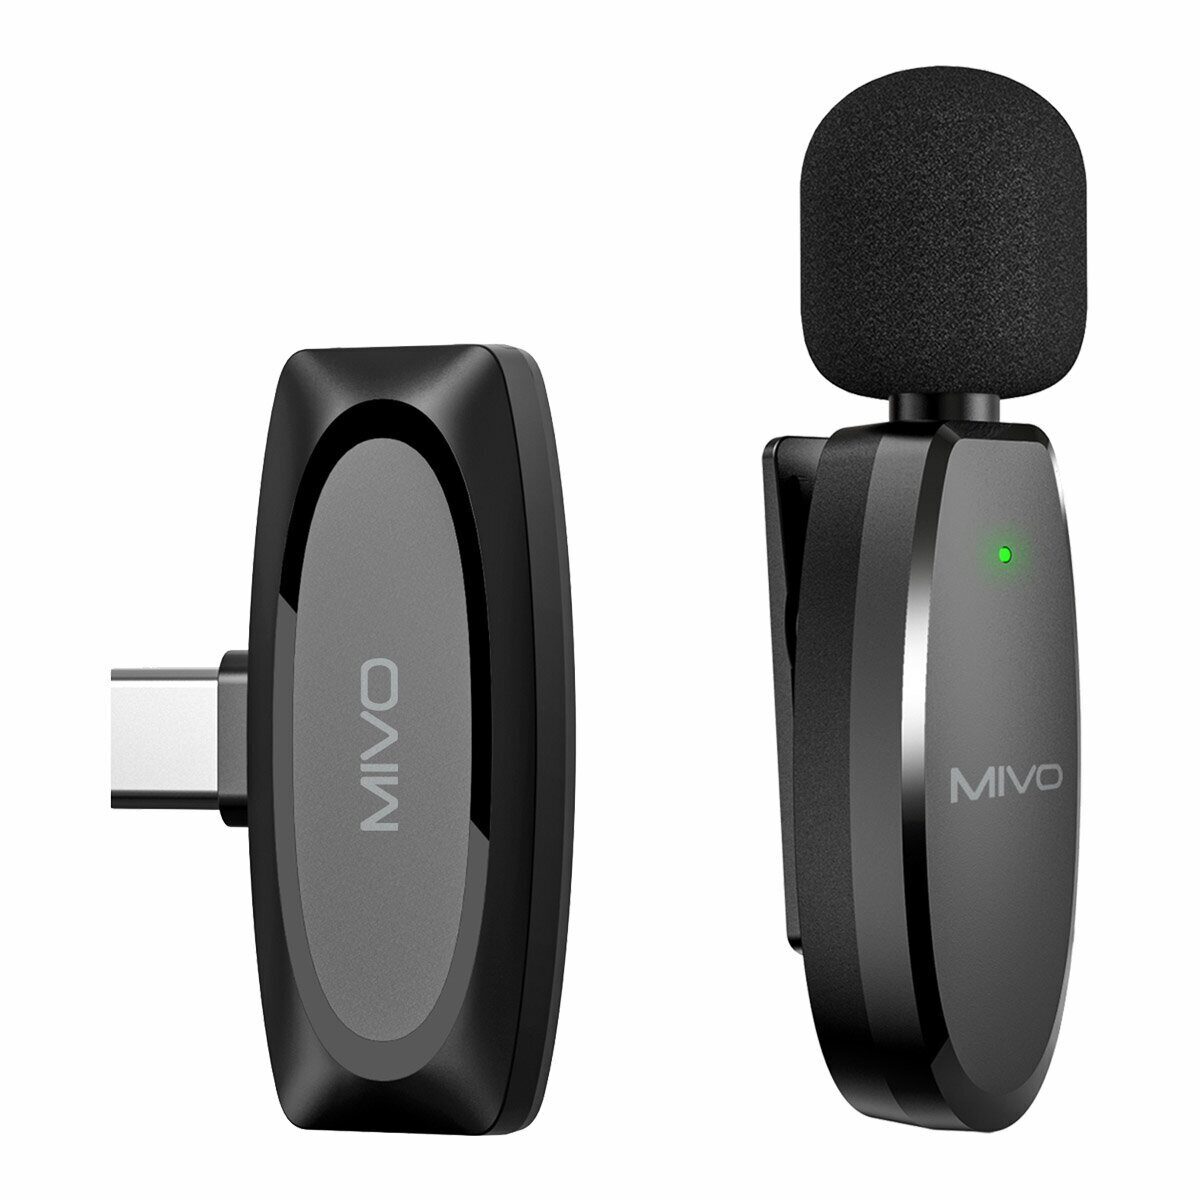 Беспроводной Bluetooth петличный микрофон Mivo MK-610T (Type-C) микрофон беспроводной mobility mmi 10